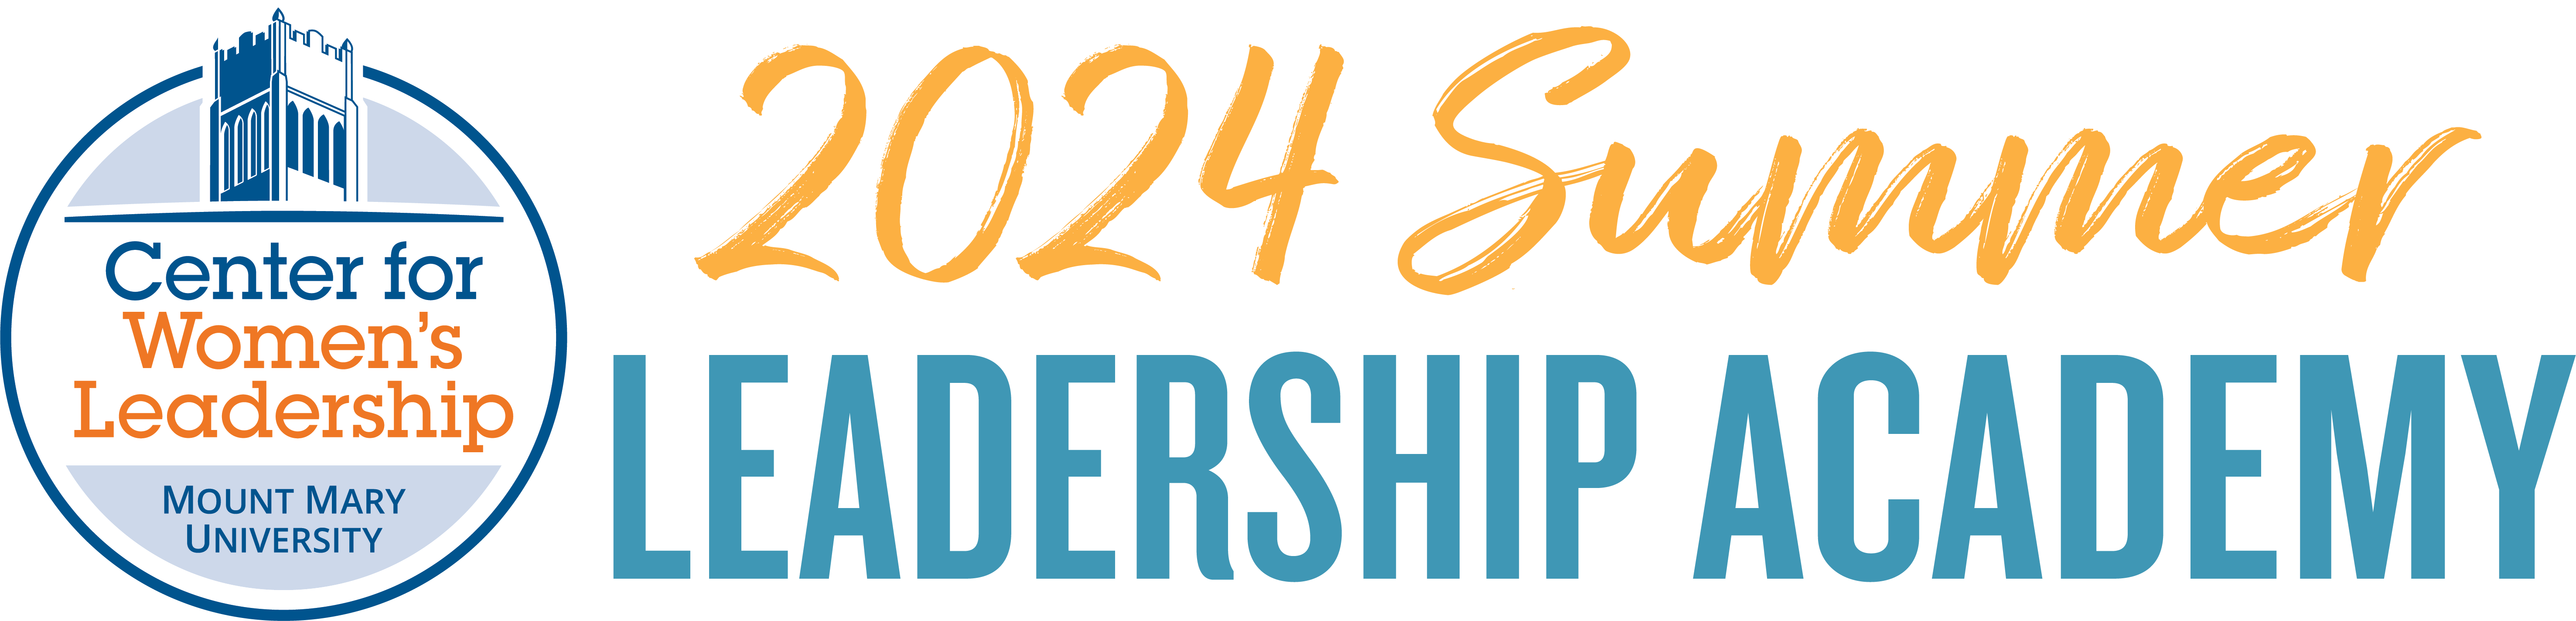 2024 sla logo